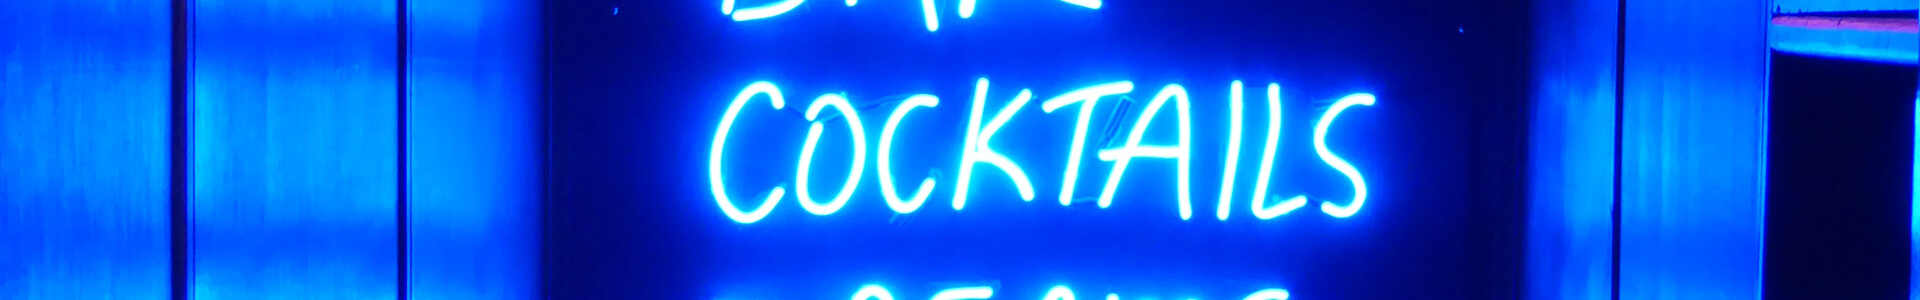 Blaues Neon-Schild mit den Wörtern Bar, Cocktails, Dreams, Disco.